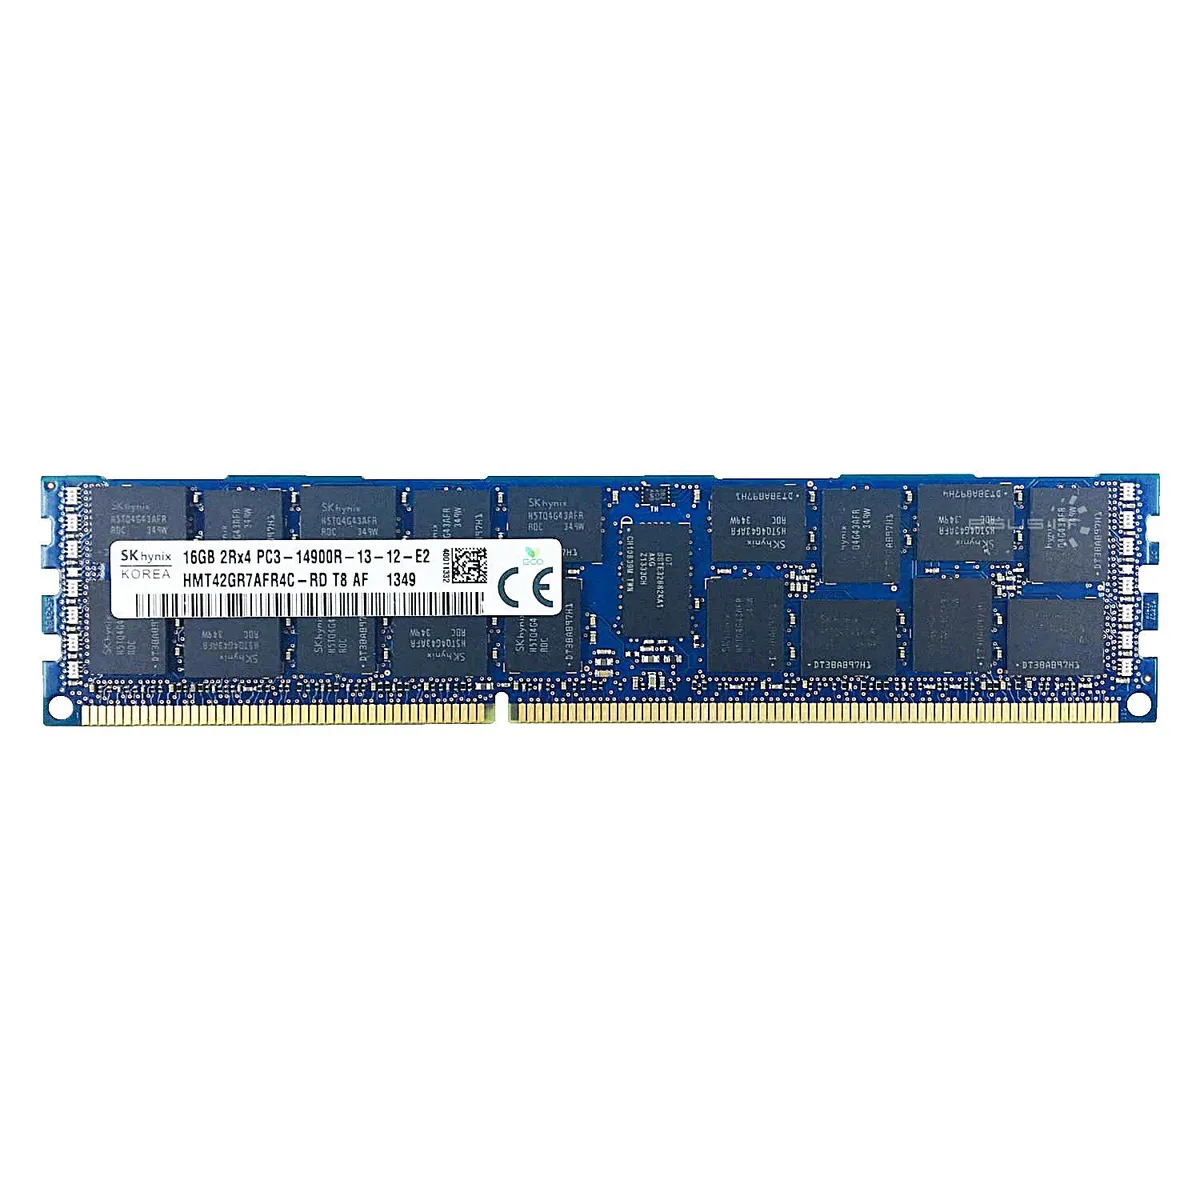 Hynix (HMT42GR7AFR4C-RD) - 16GB PC3-14900R (2Rx4, DDR3-1866MHz) RAM